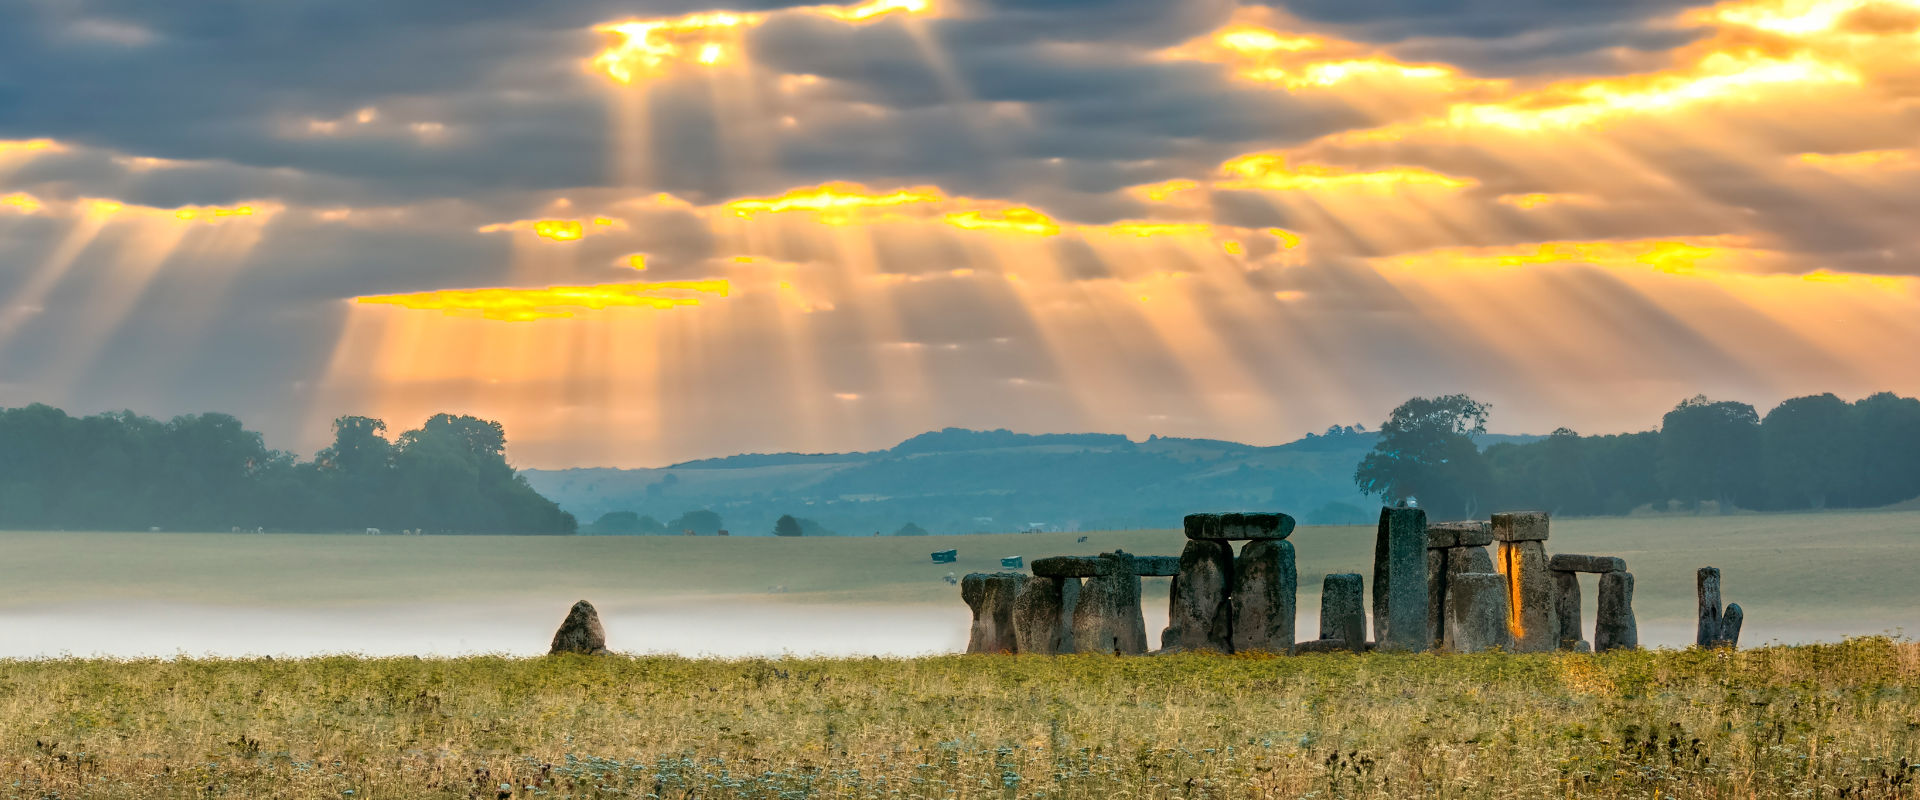 Stonehenge nahe Salisbury - Südengland Reise